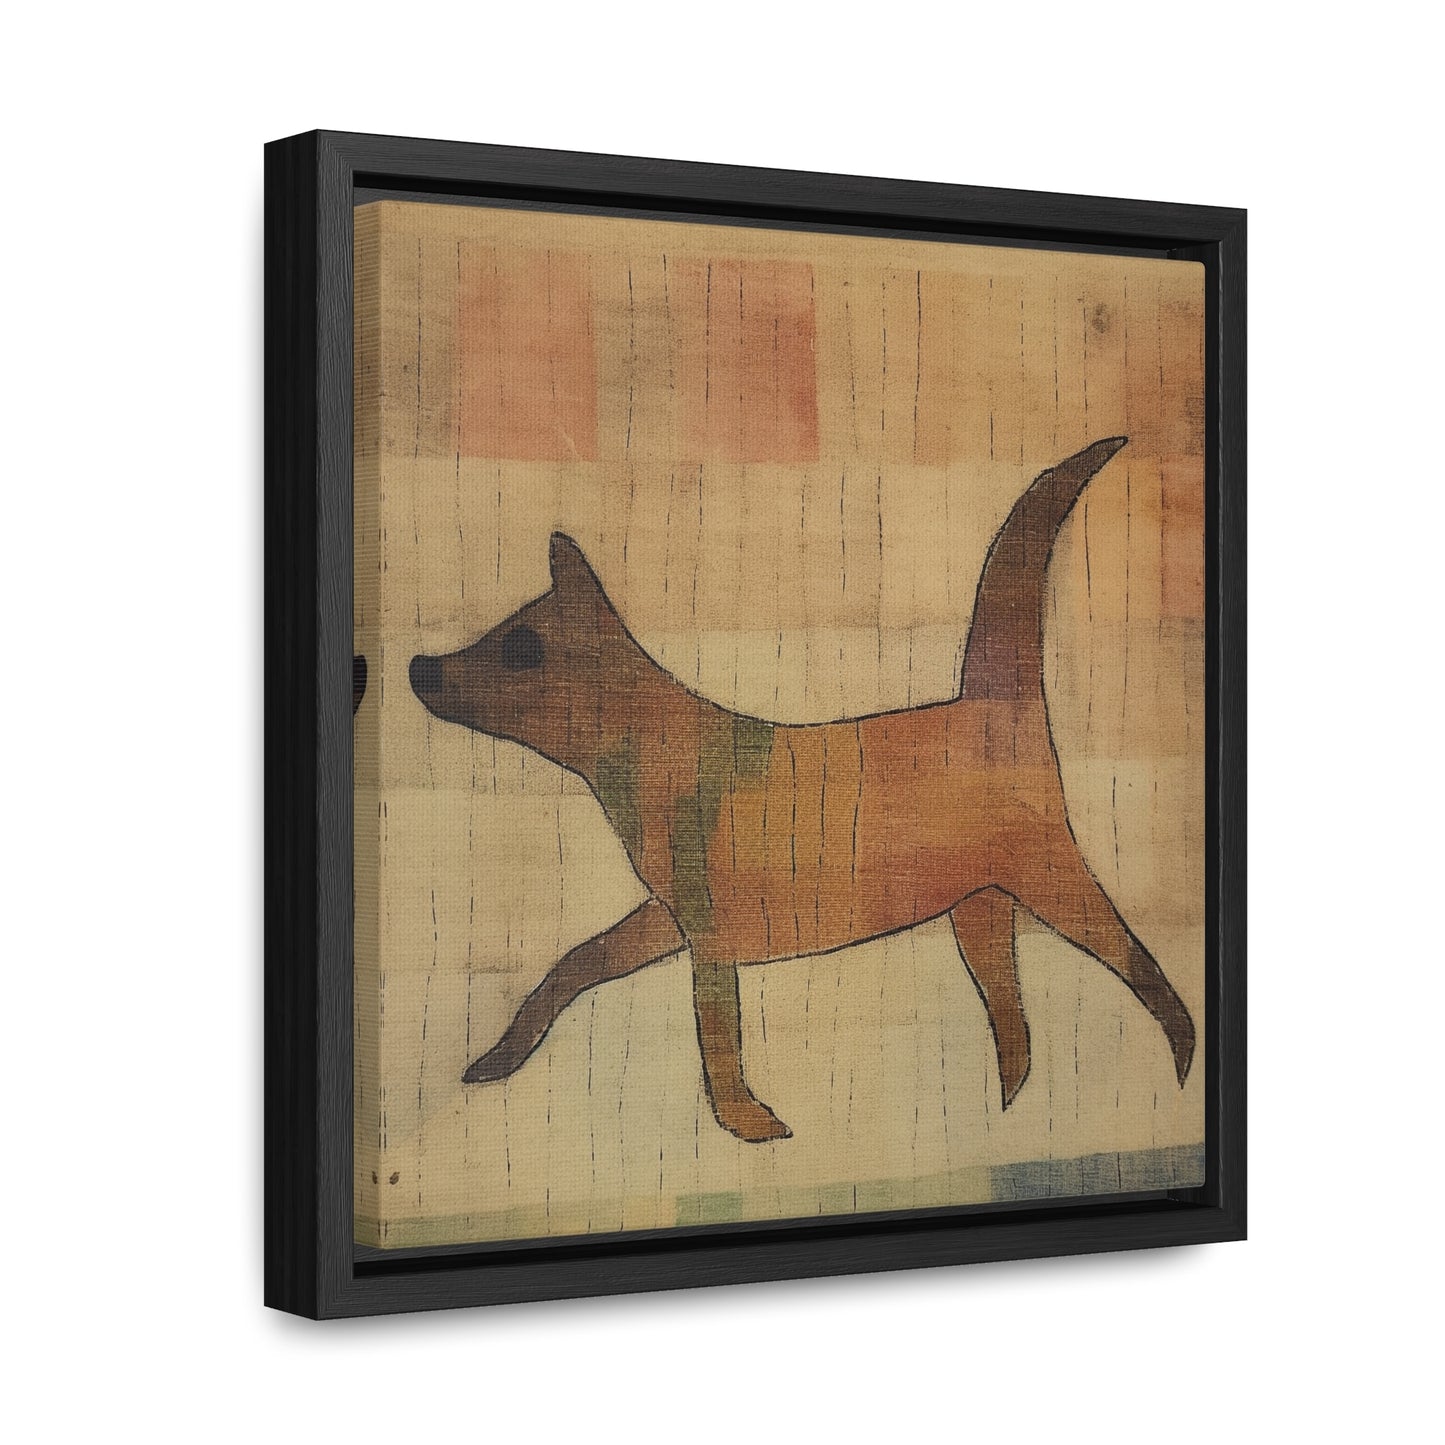 V Dog 6, Gallery Canvas Wraps, Square Frame